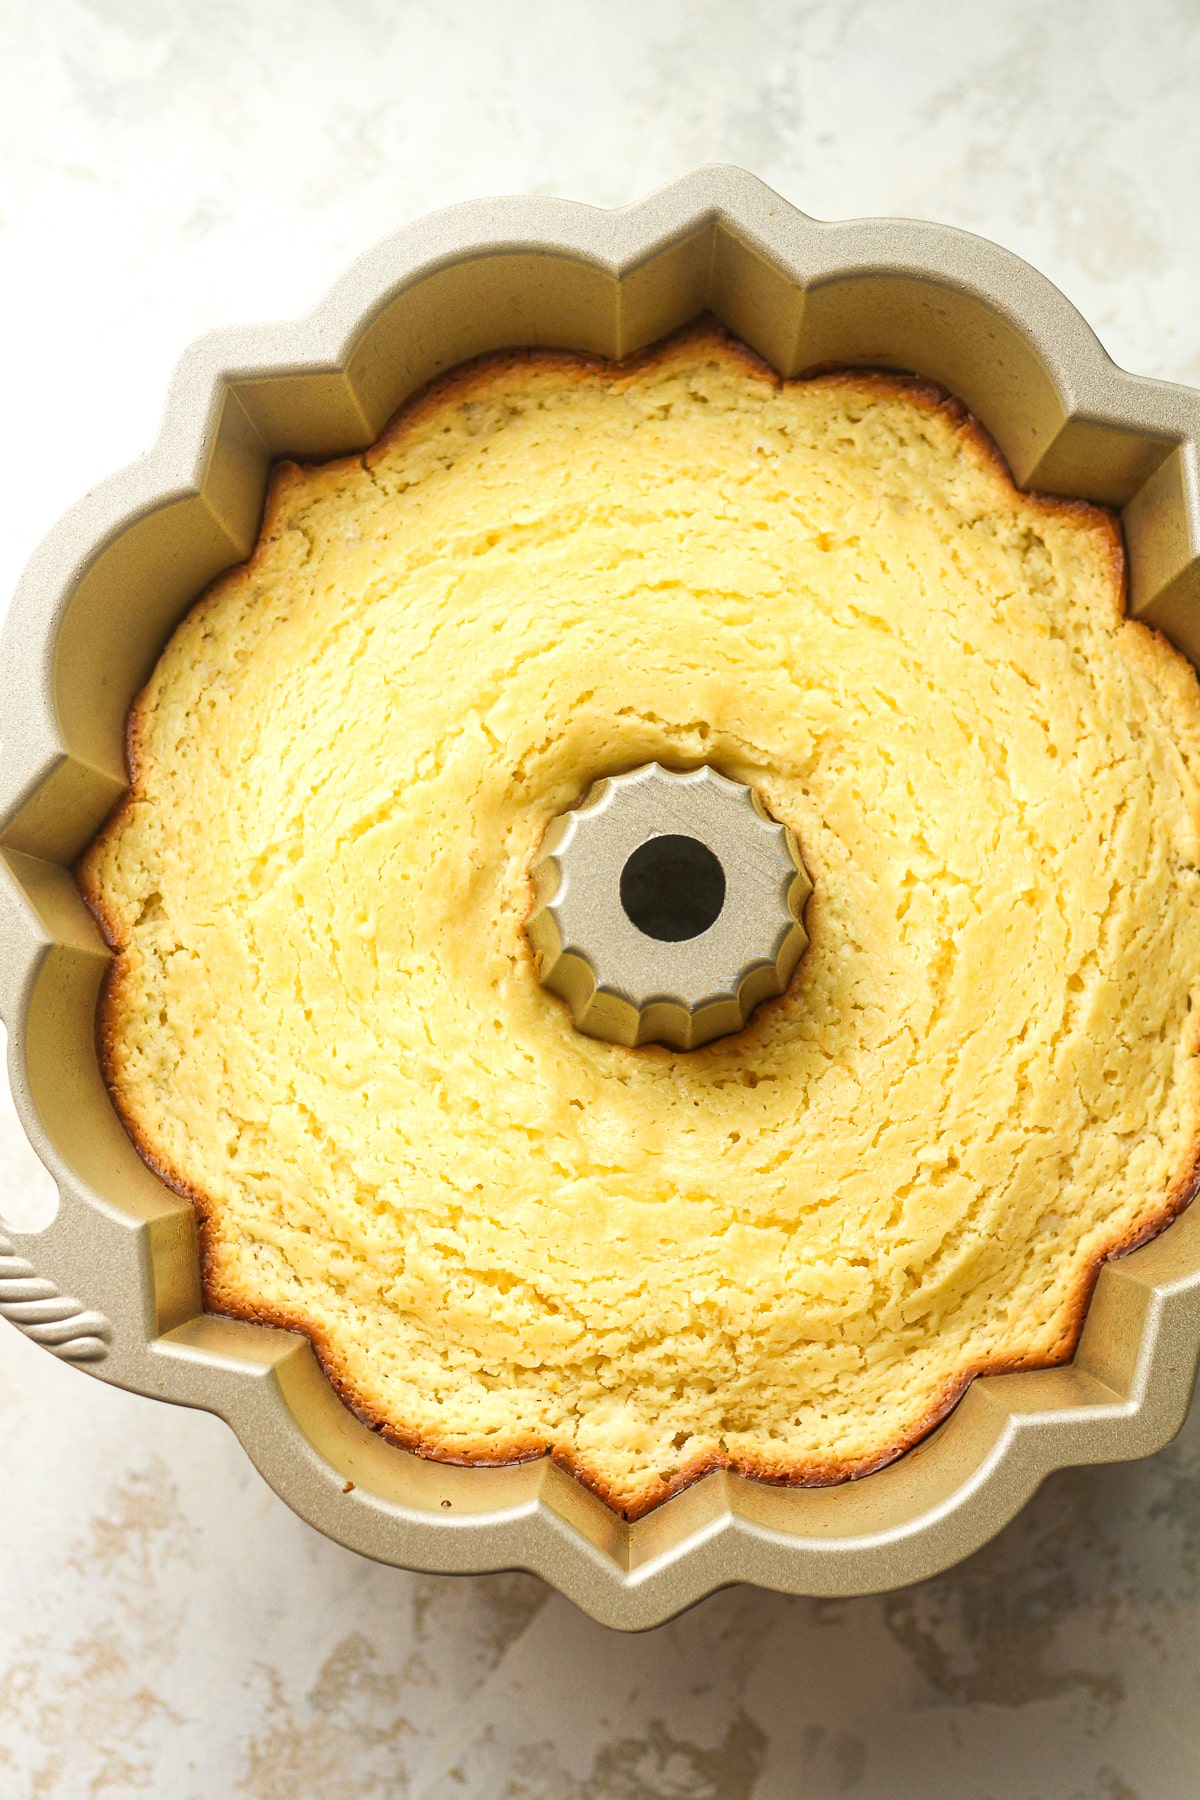 The just baked lemon bundt cake in a bundt pan.